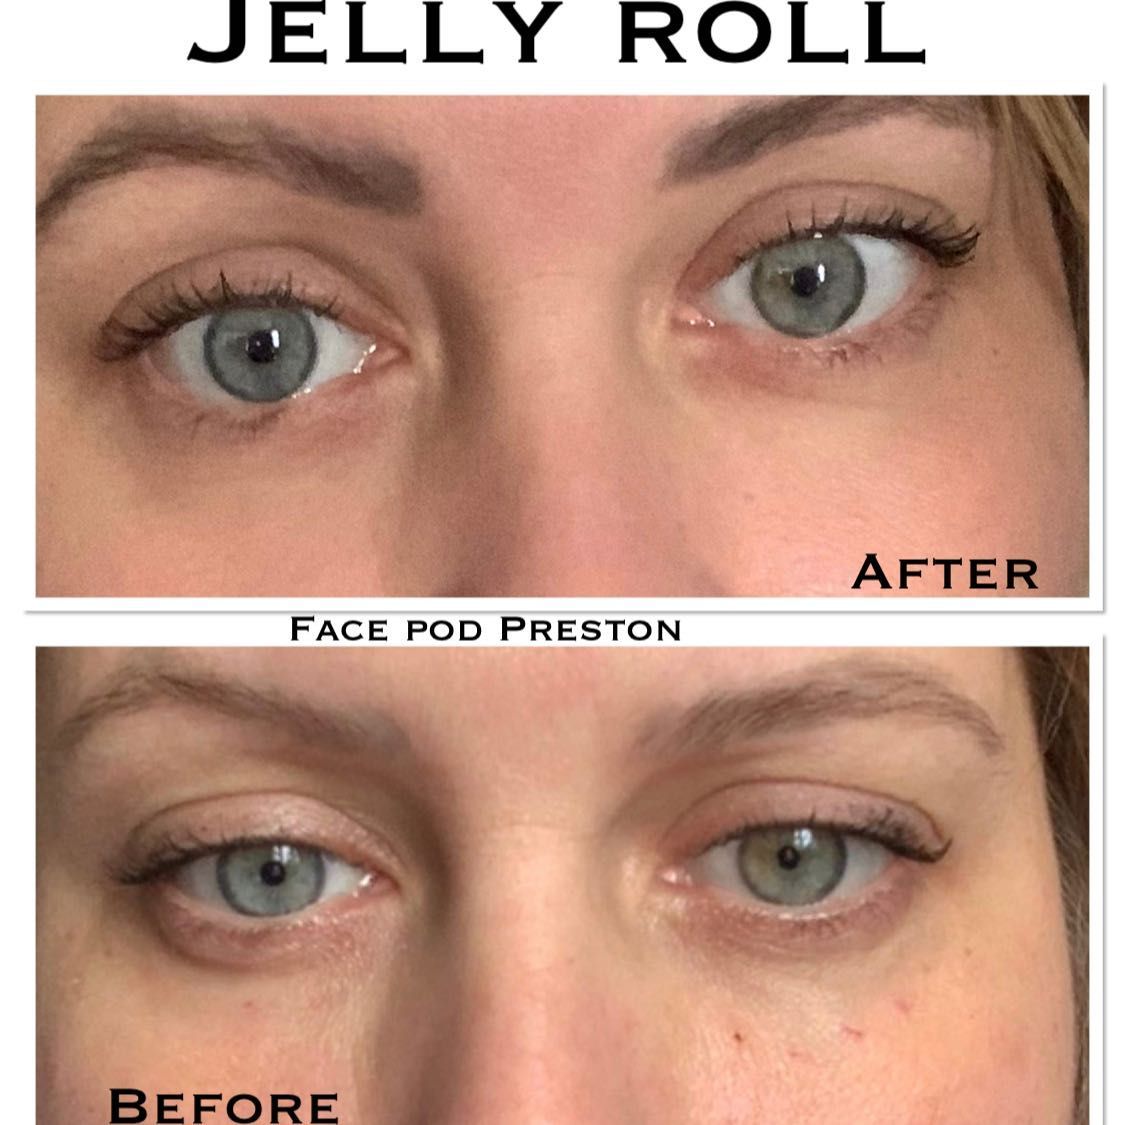 Jelly roll - under eye Botox portfolio